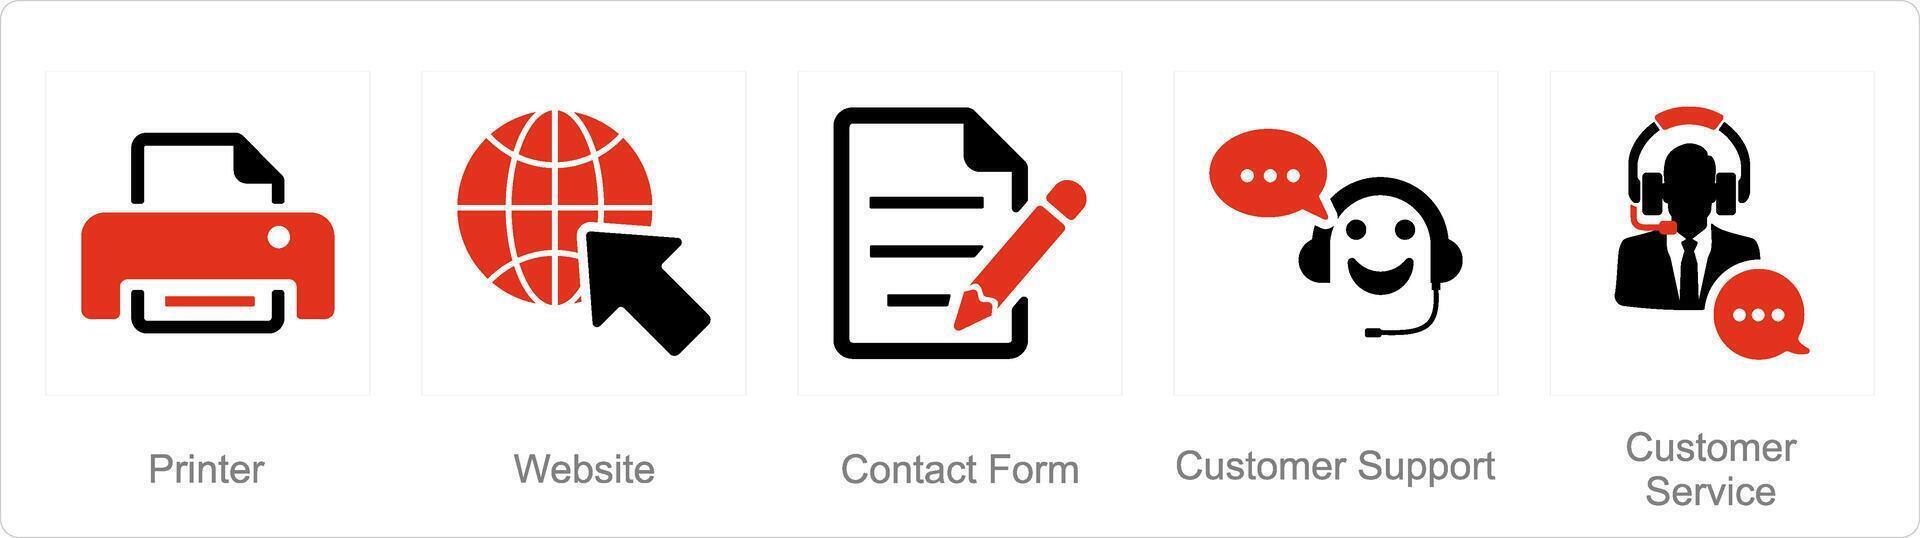 en uppsättning av 5 Kontakt ikoner som skrivare, hemsida, Kontakt form vektor